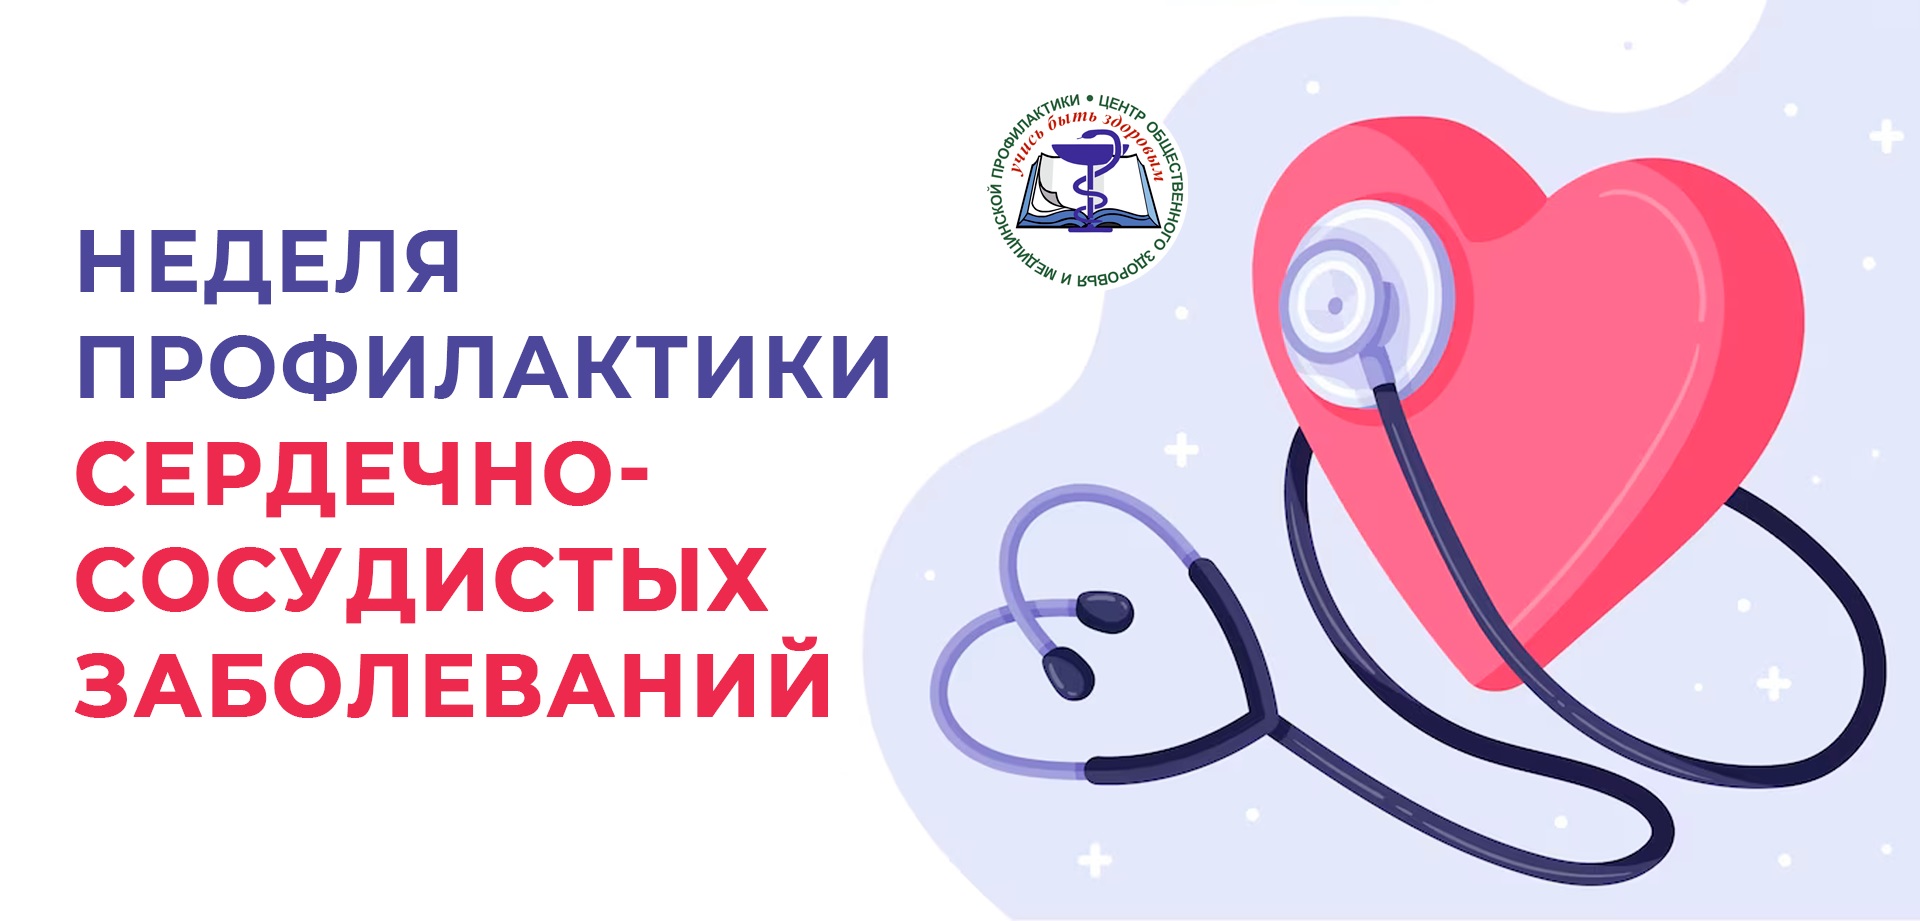 С 07 по 13 августа в России проходит Неделя профилактики сердечно-сосудистых заболеваний.